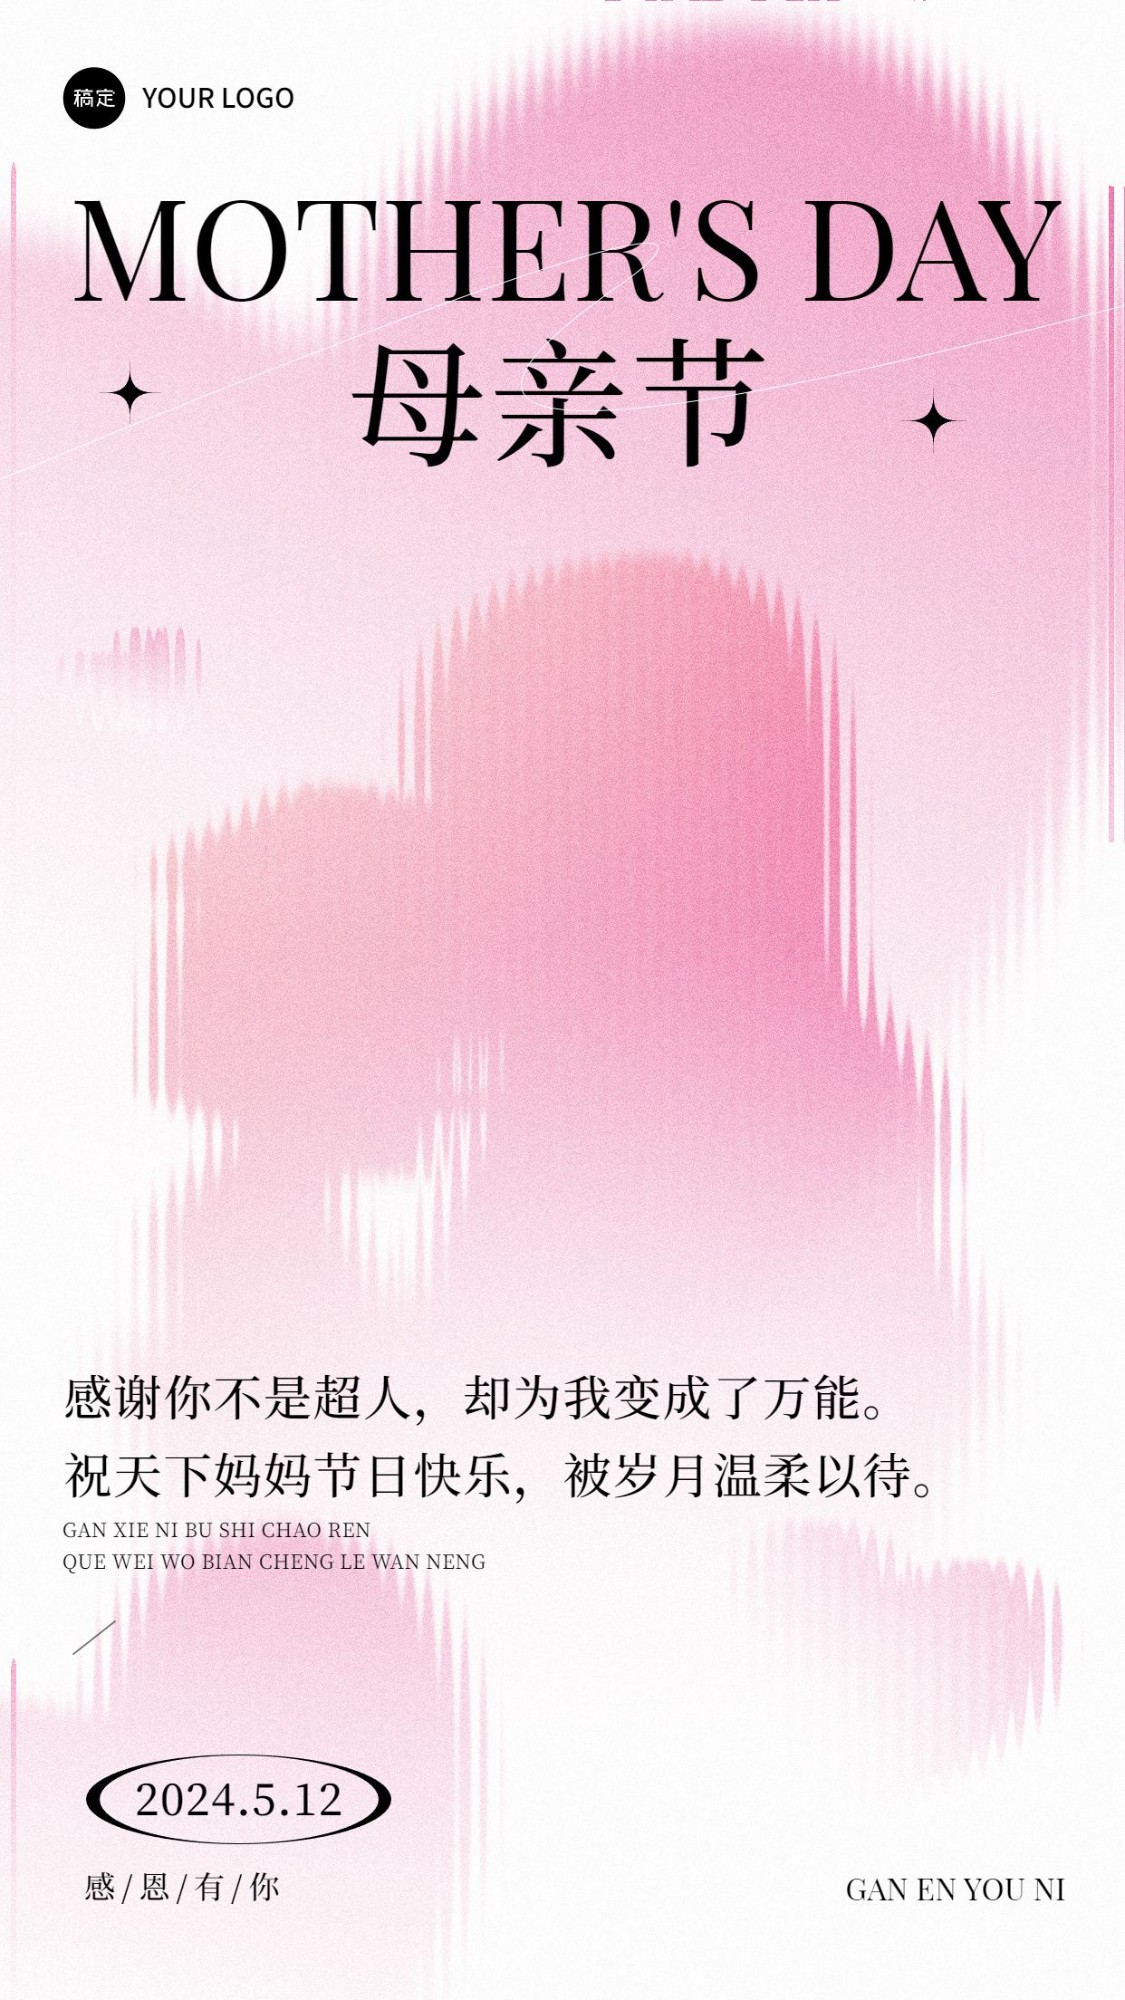 企业母亲节节日祝福贺卡剪影插画手机海报预览效果